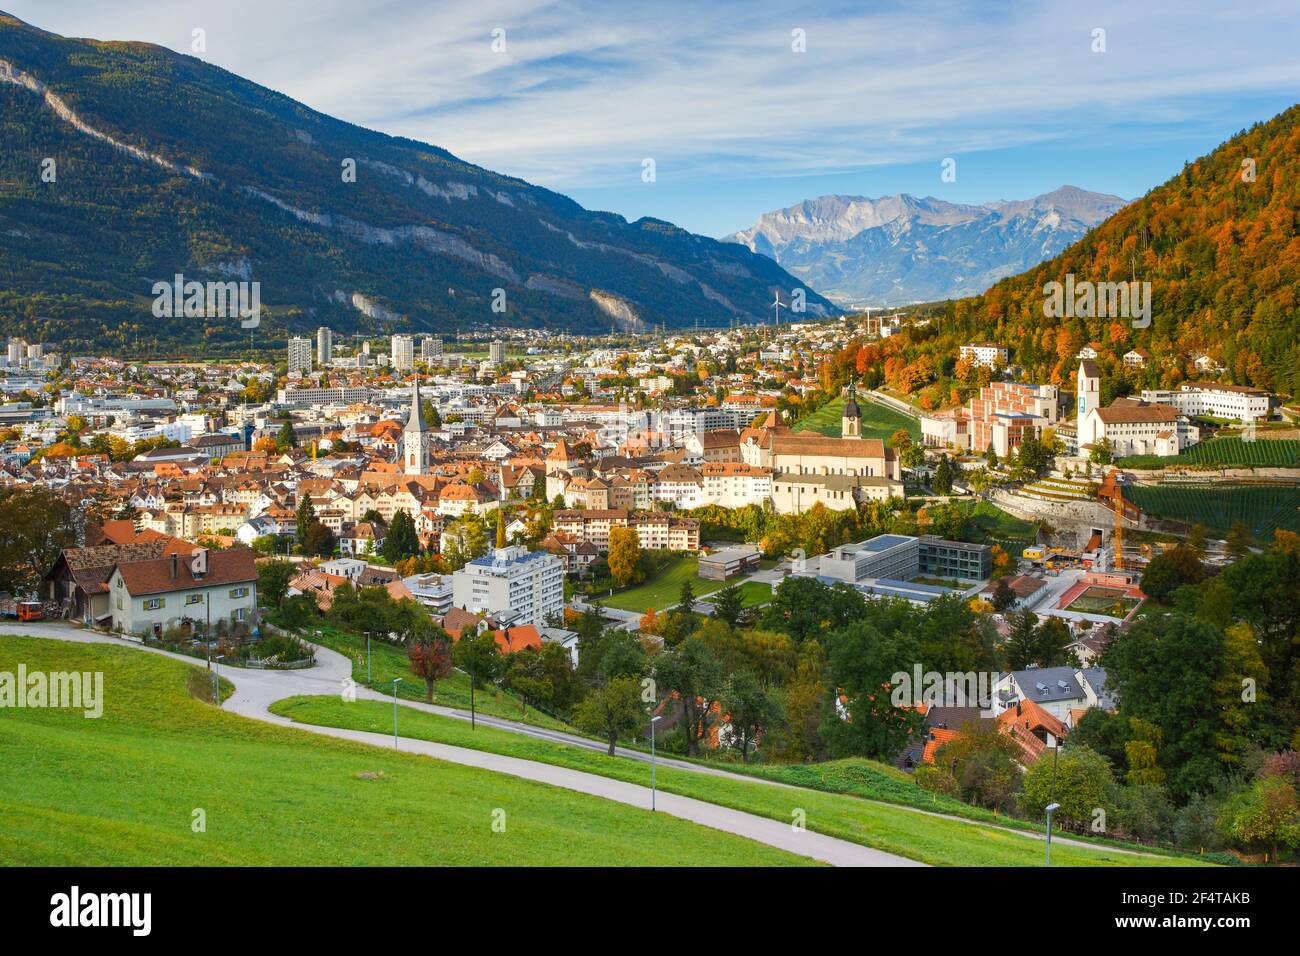 Geographie / Reisen, Schweiz, Stadt Chur, Graubünden,  Zusatz-Rechteklärung-Info-nicht-verfügbar Stockfotografie - Alamy